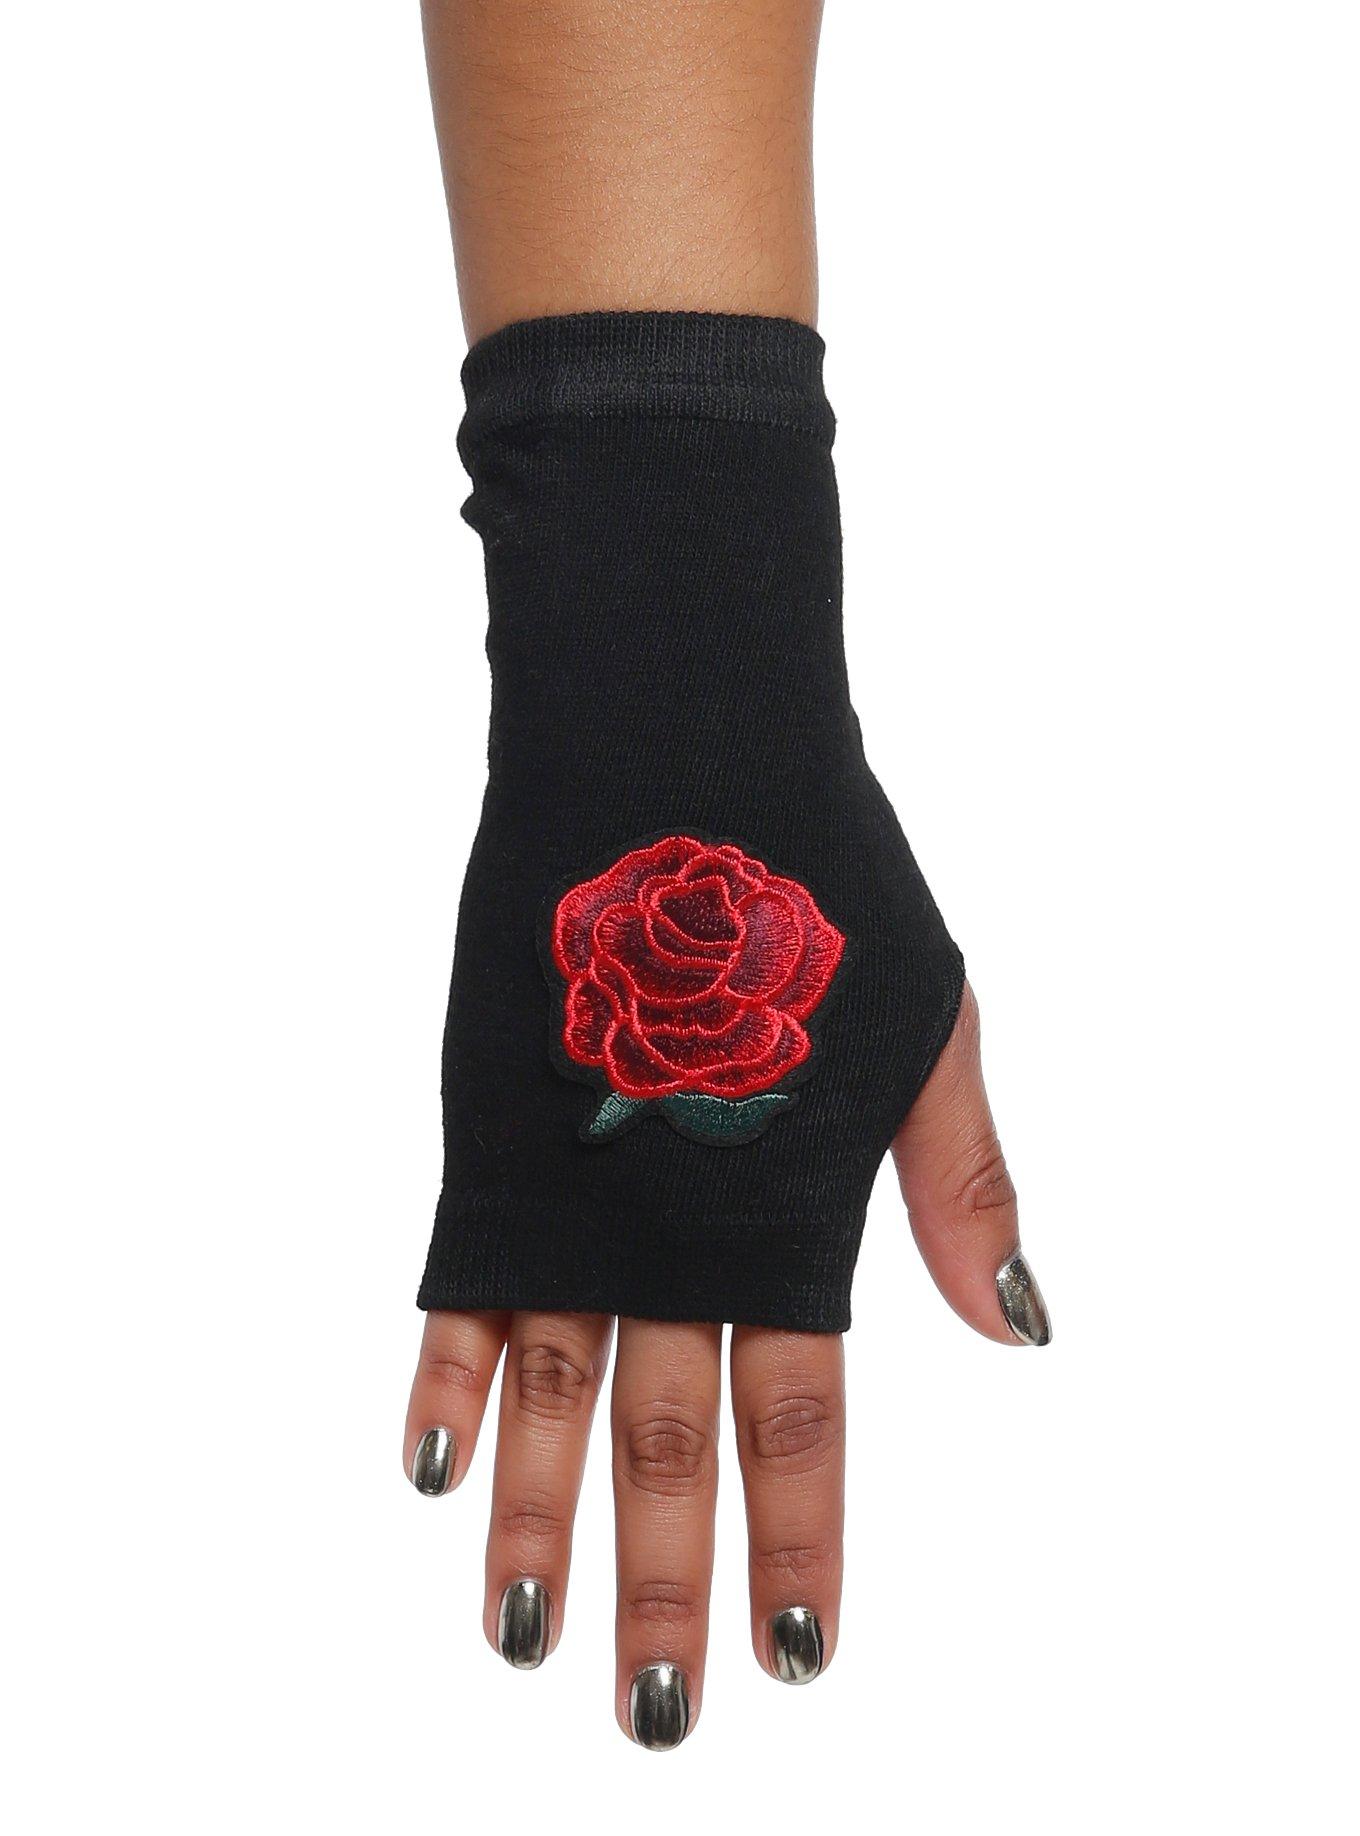 Rose Fingerless Gloves